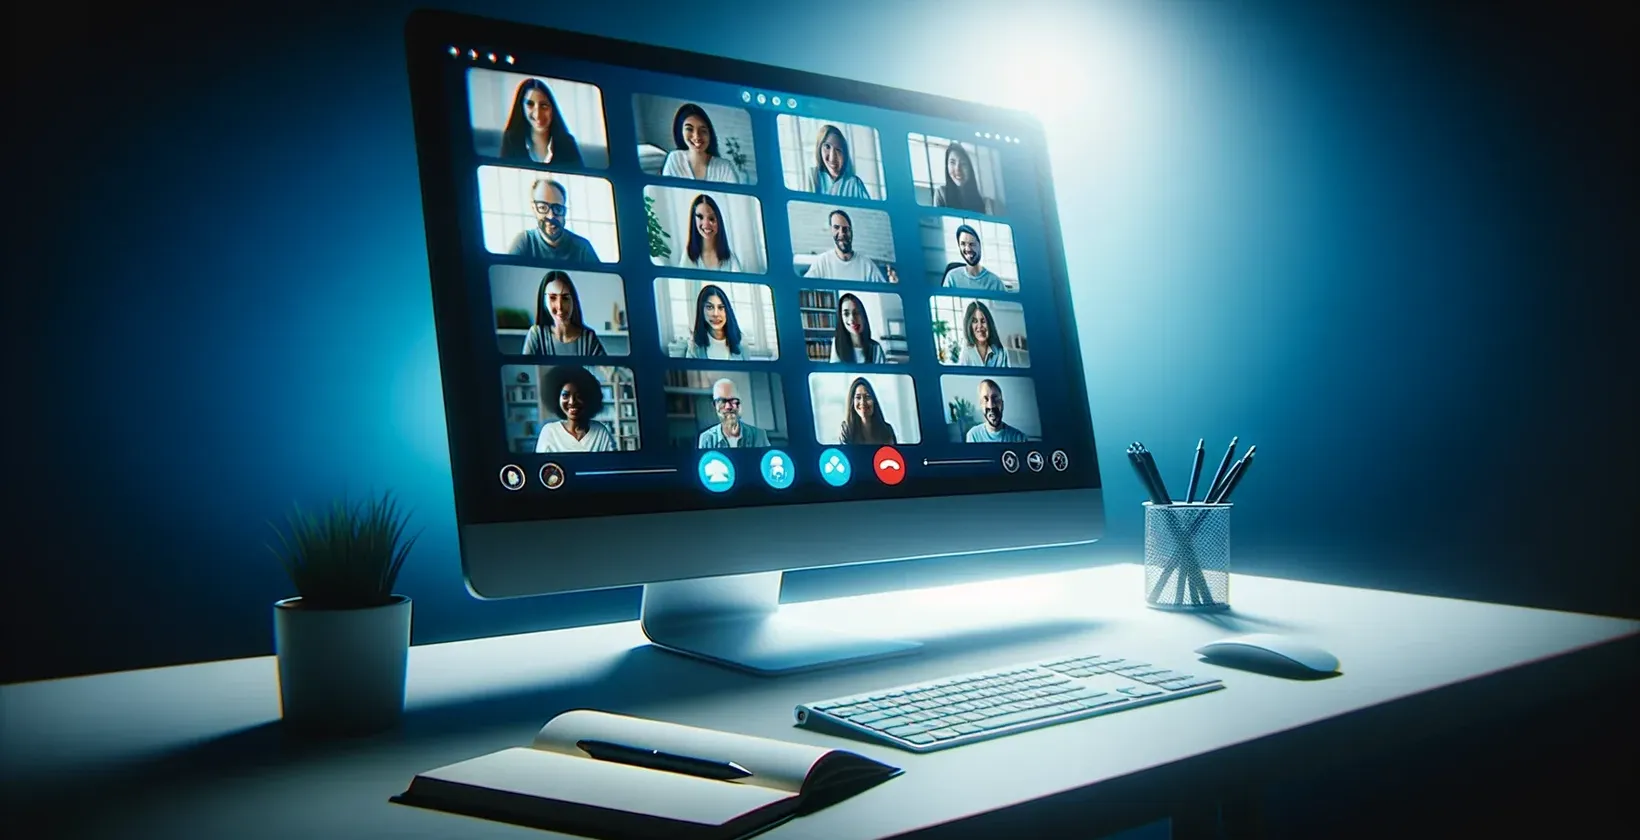 En bild av en datorskärm som visar en GoToMeeting-session, med en grupp människor och live-transkription synlig.